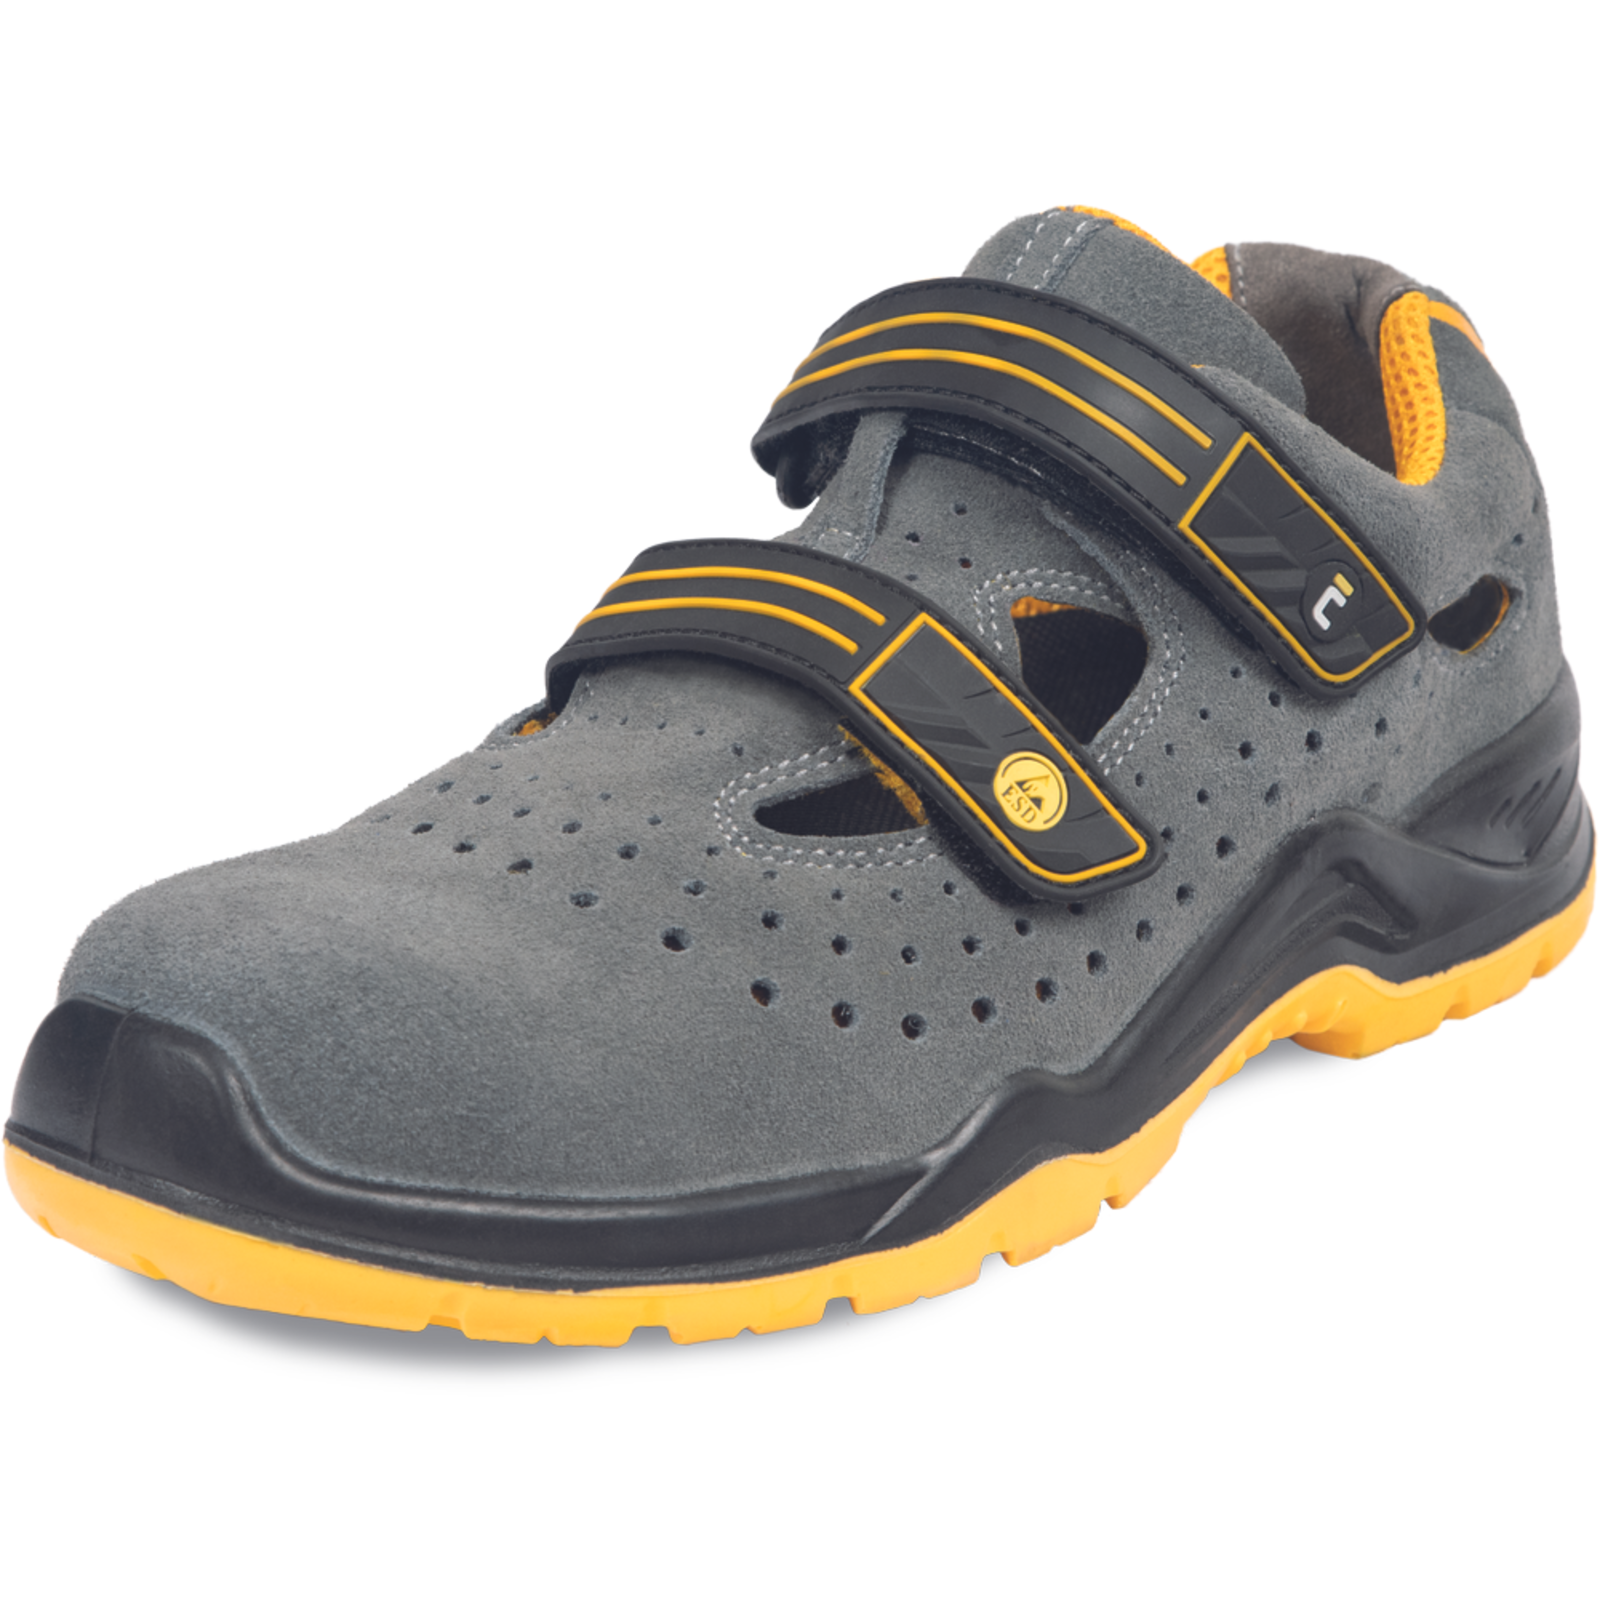 Pracovné bezpečnostné sandále Cerva Yuwill MF ESD S1P SRC - veľkosť: 39, farba: sivá/žltá